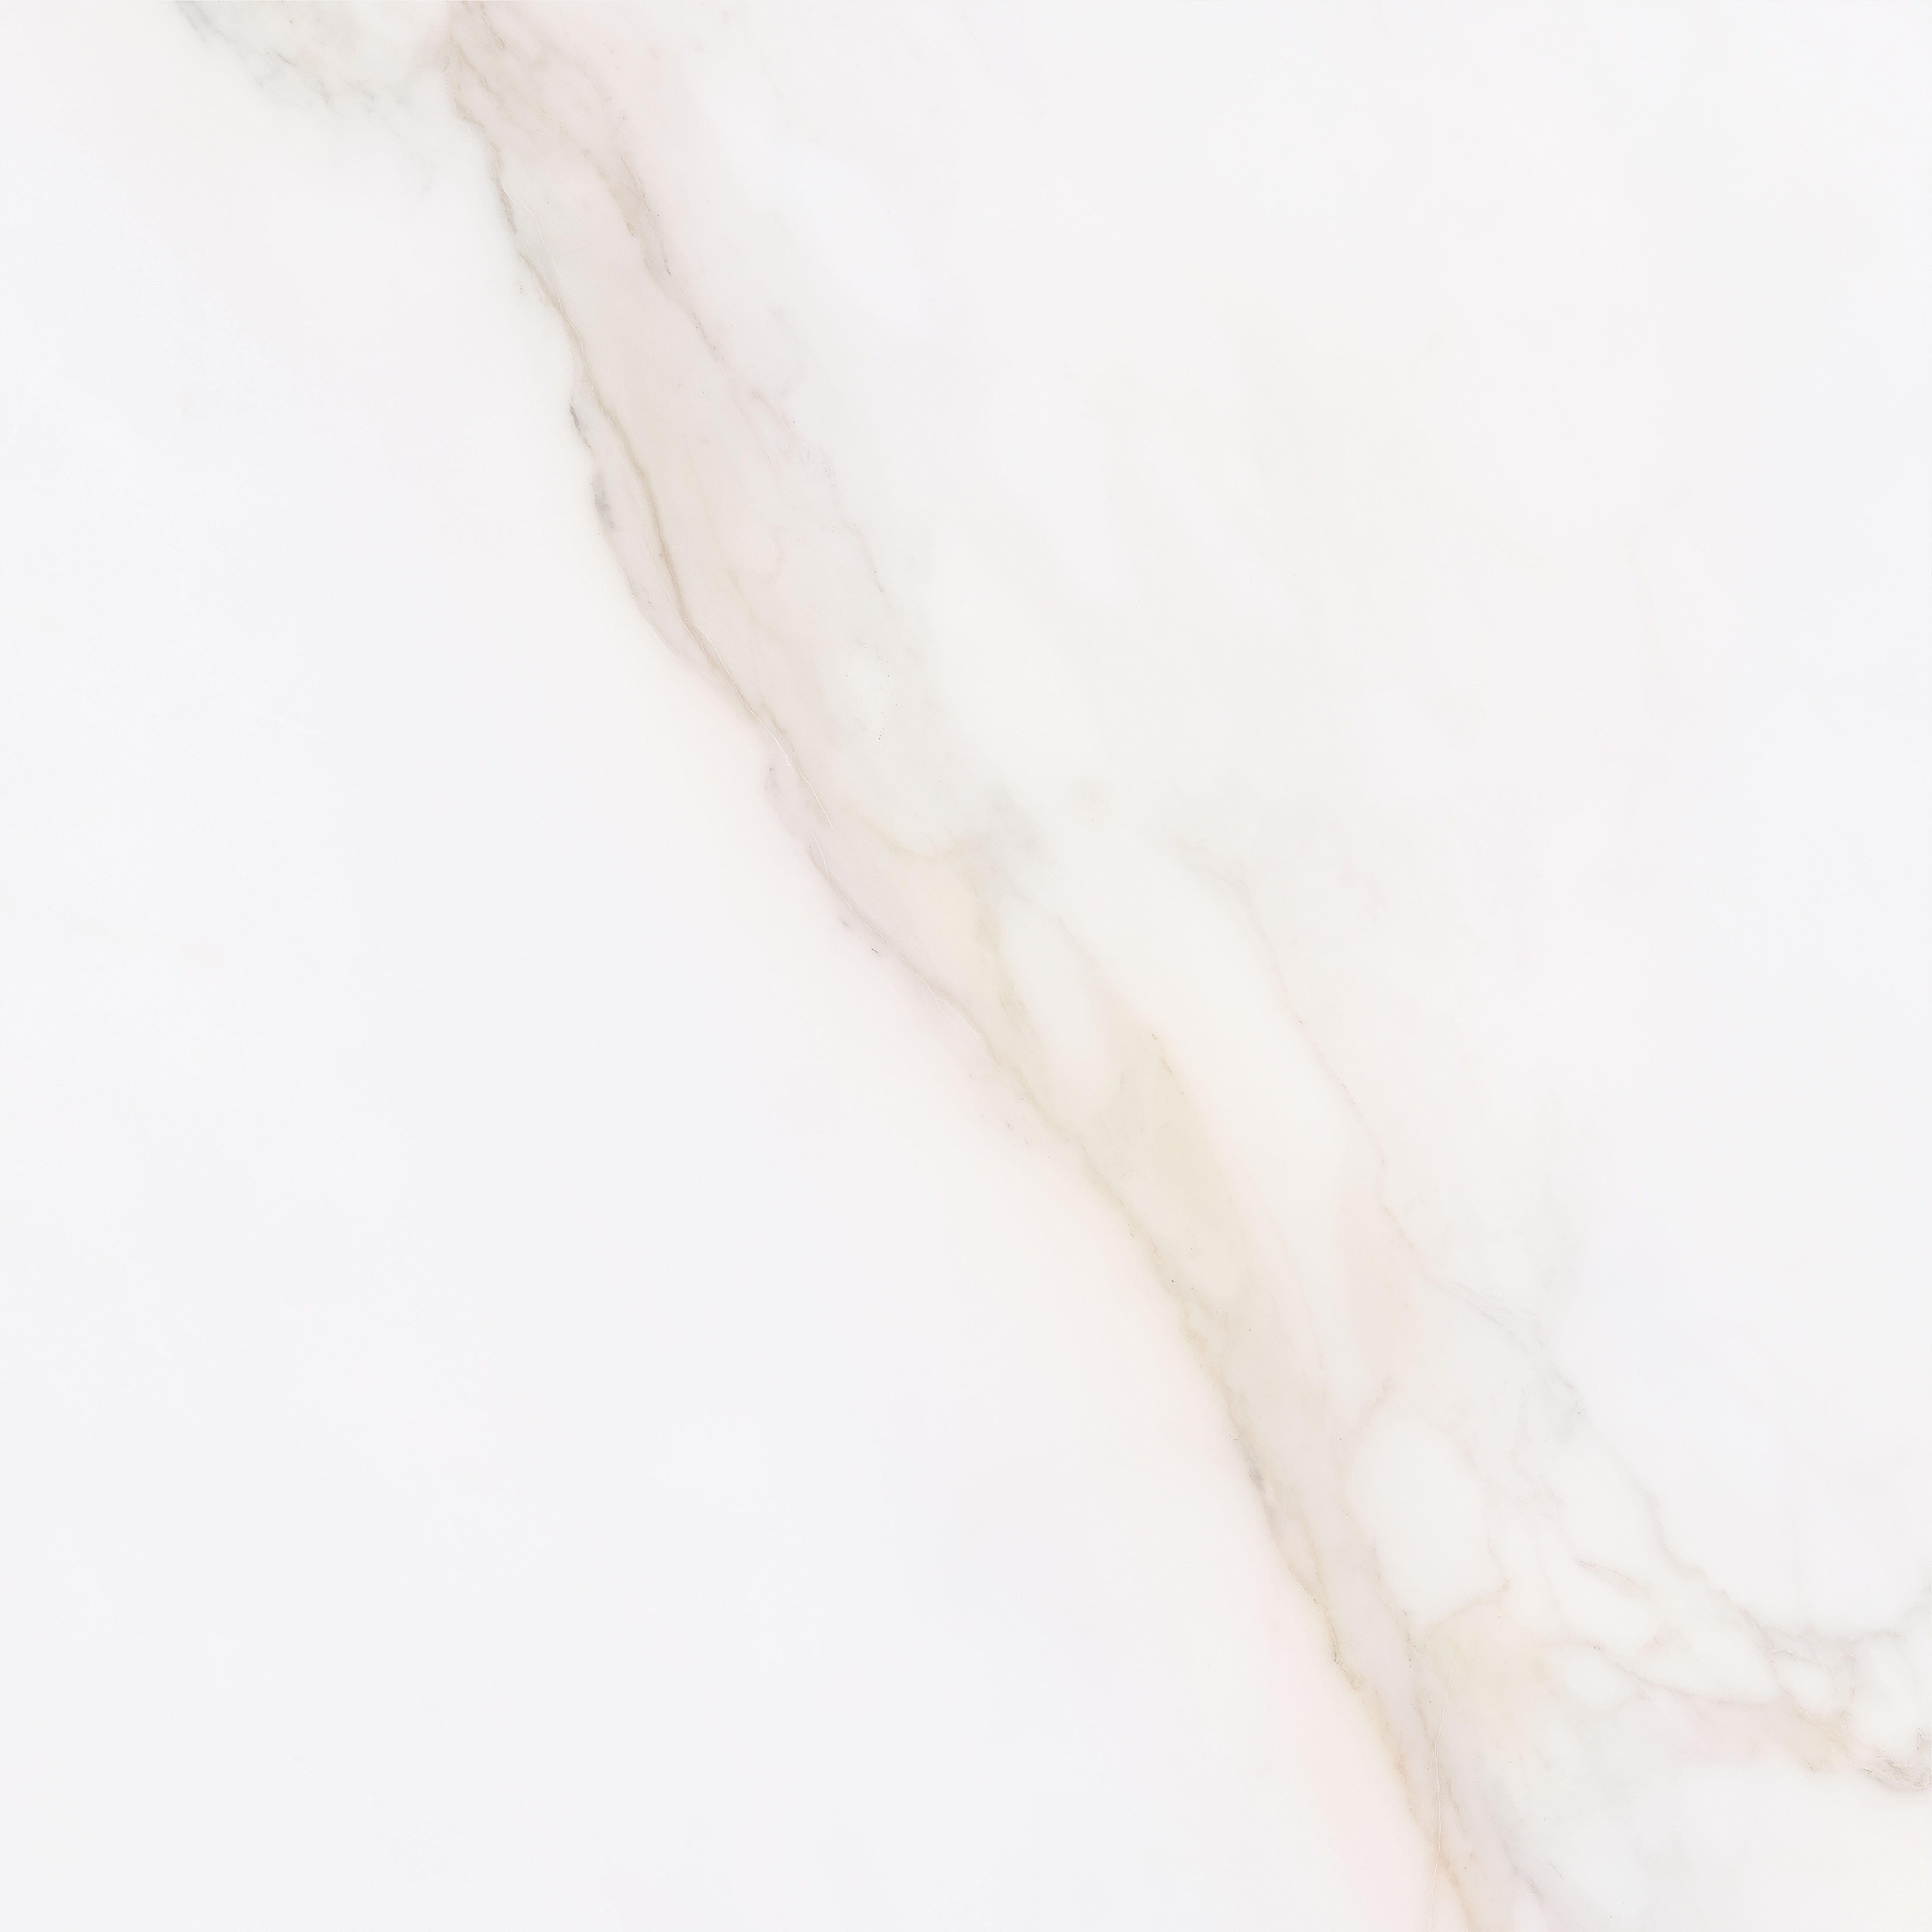 Vanezia Gres Kalmar Bodenfliesen Marmoroptik Weiß glänzend 75x75 cm rekt. 